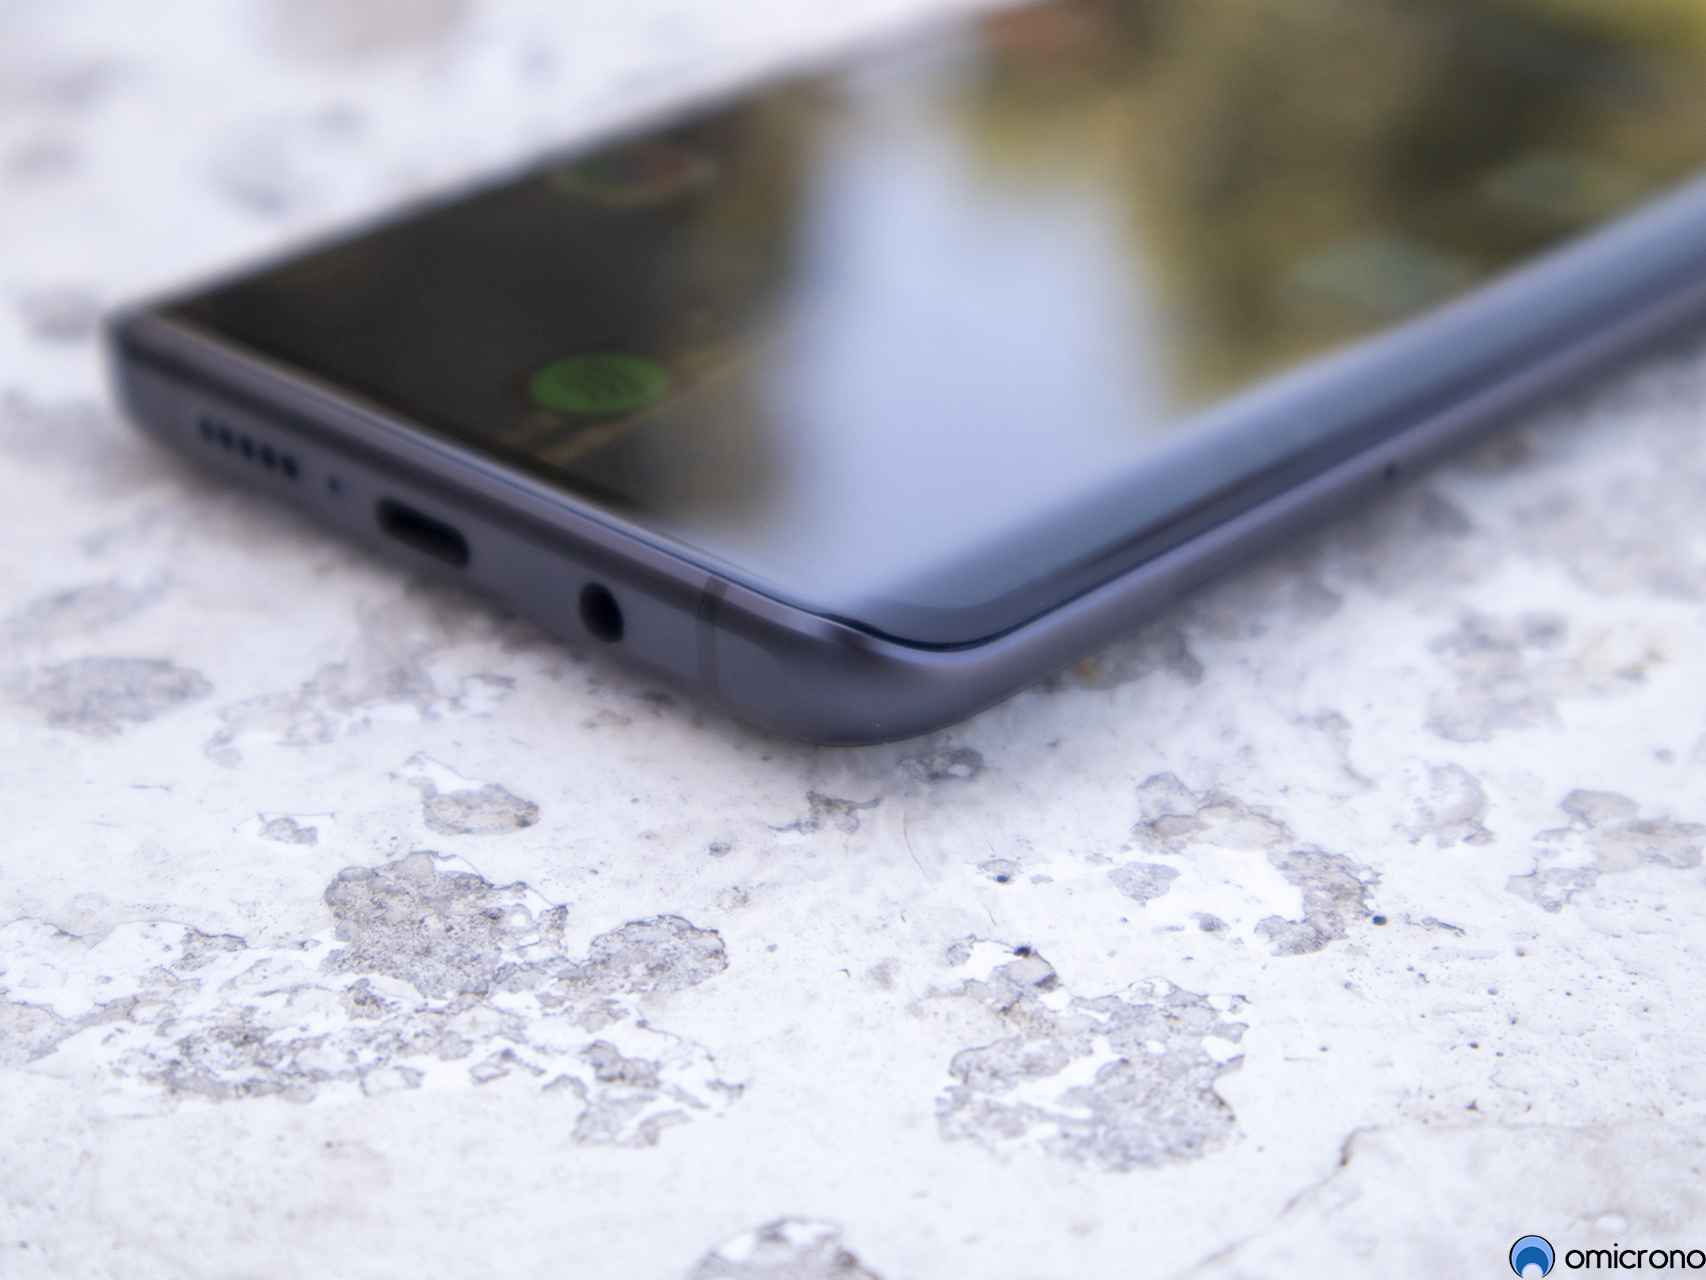 La curvatura del Xiaomi Mi Note 10 Lite nos parece algo pronunciada de más.